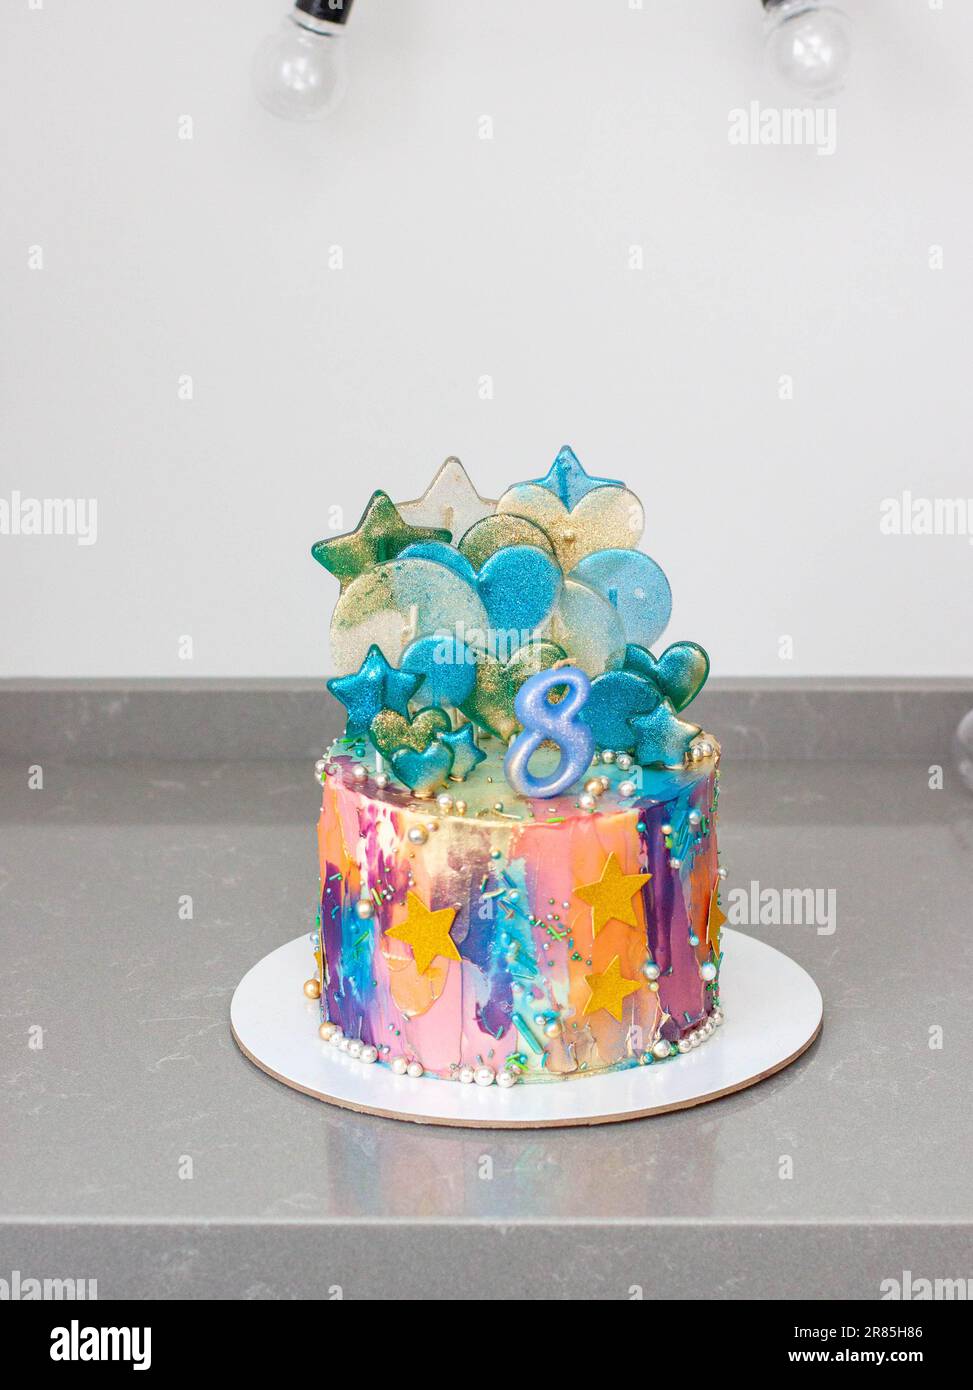 Vivace torta colorata glittery con numero 8, lecca, stelle commestibili, spruzzi su sfondo festivo Foto Stock